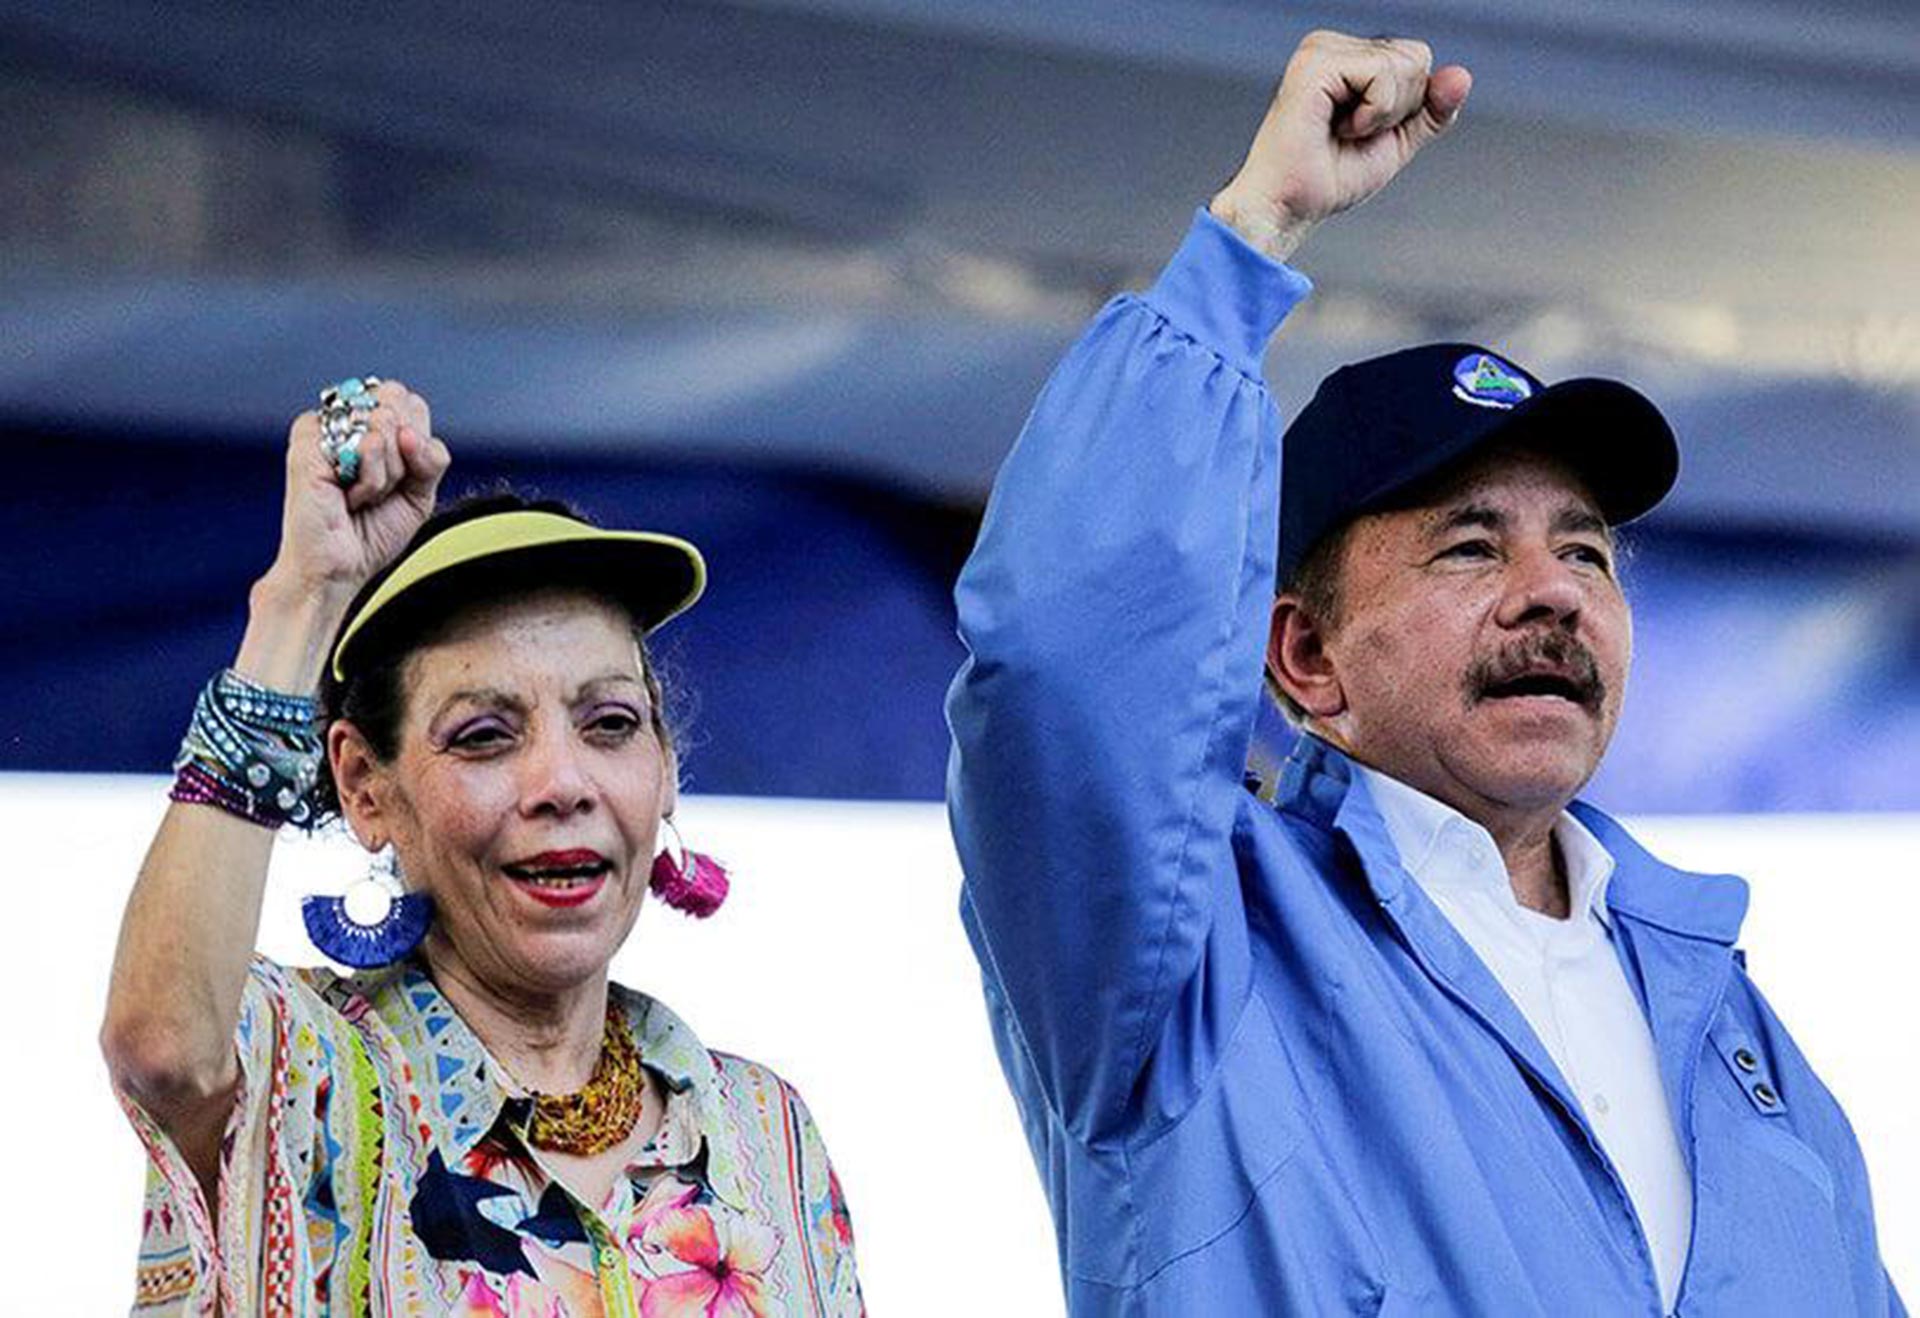 Daniel Ortega y Rosario Murillo marchan hacia una reelección segura con un sistema electoral de “dados cargados”. (Foto Reuters)
